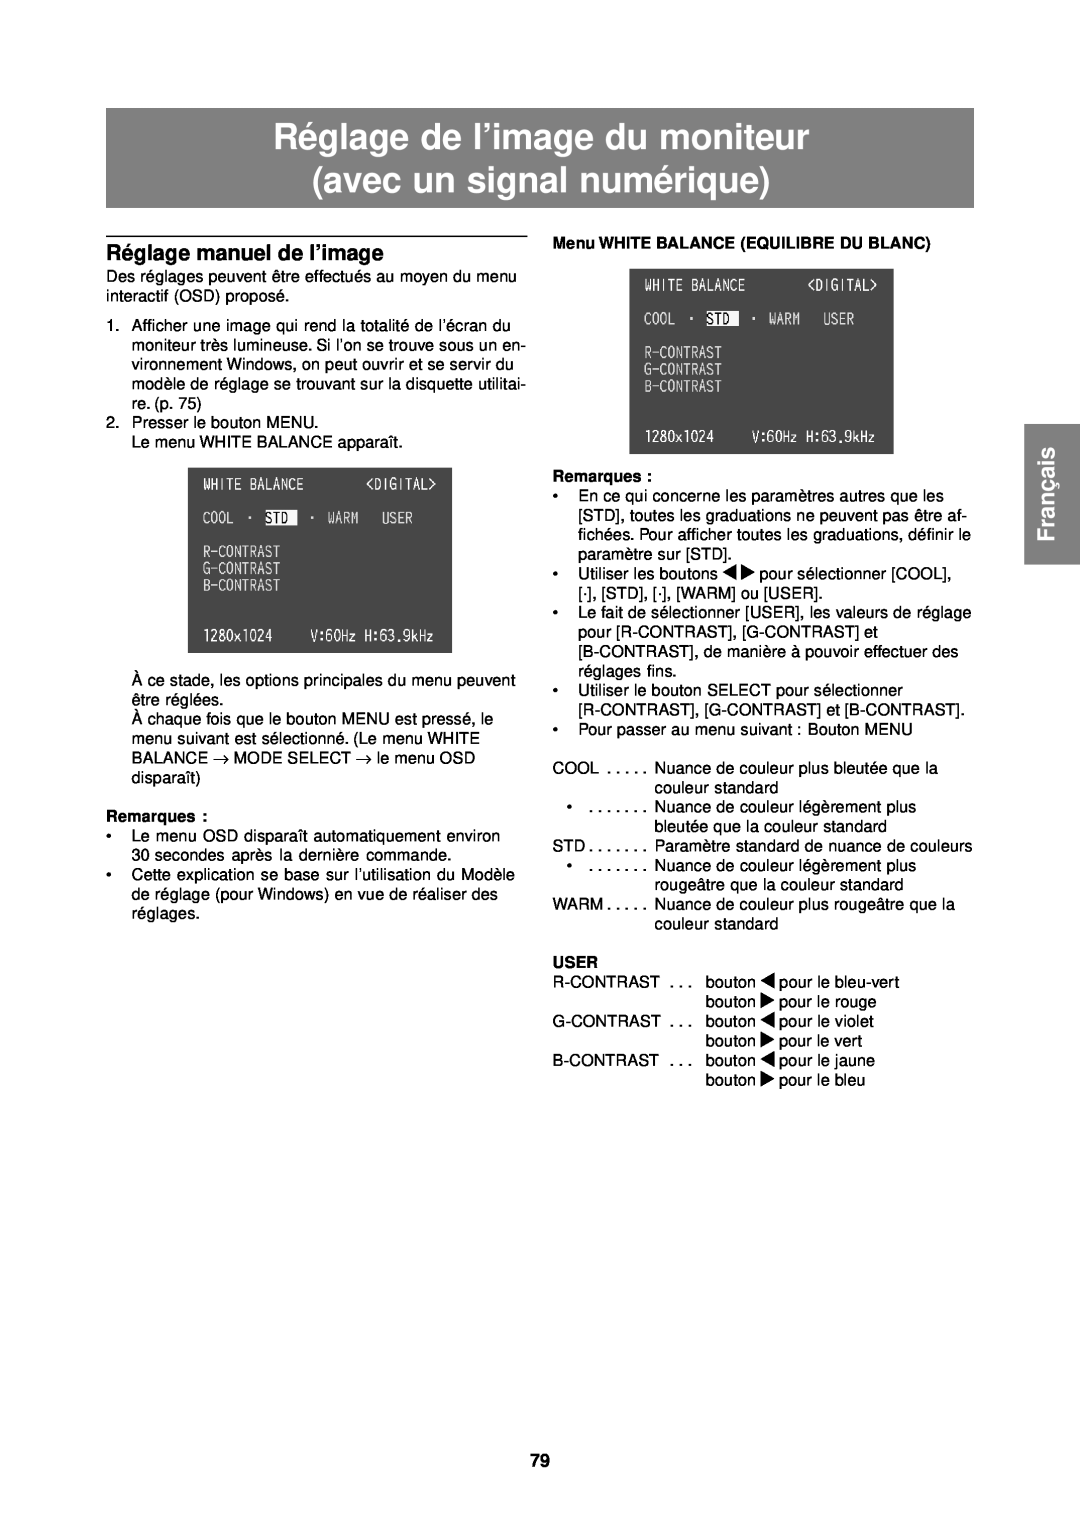 Sharp LL-T1610W Réglage de l’image du moniteur avec un signal numérique, Français, Réglage manuel de l’image, Remarques 